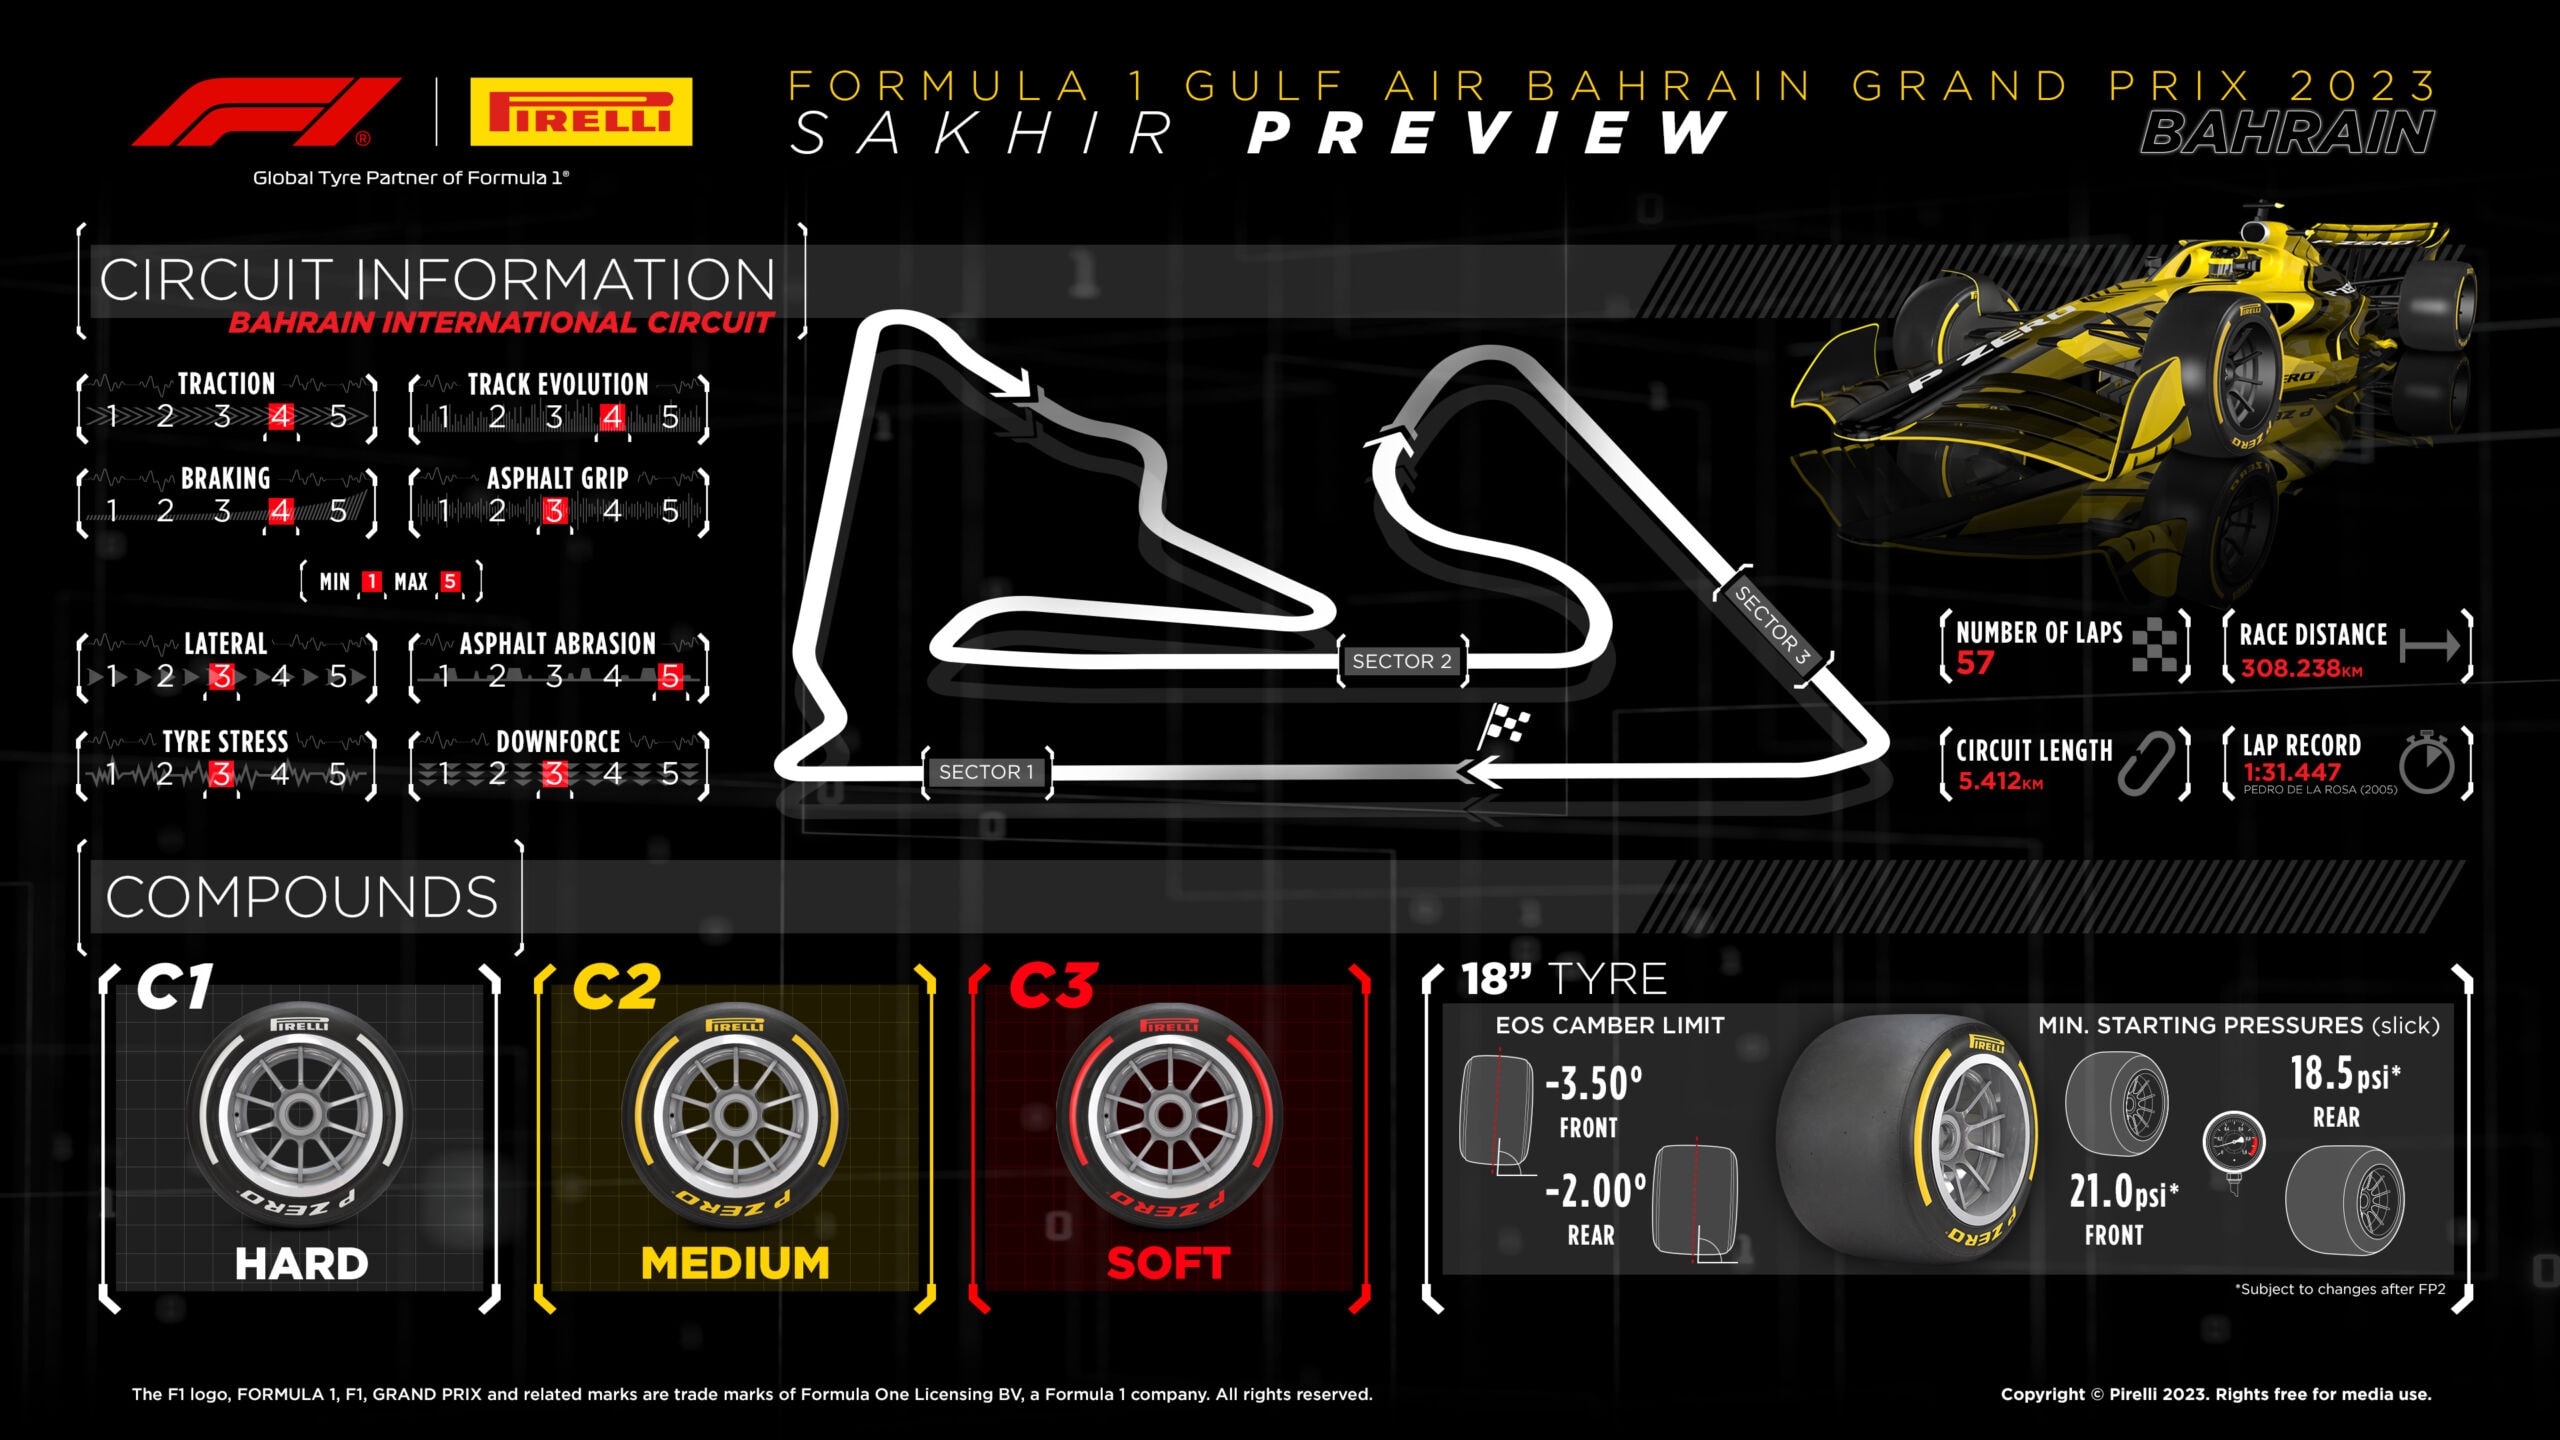 2023 Bahrain Grand Prix Tyre Compounds